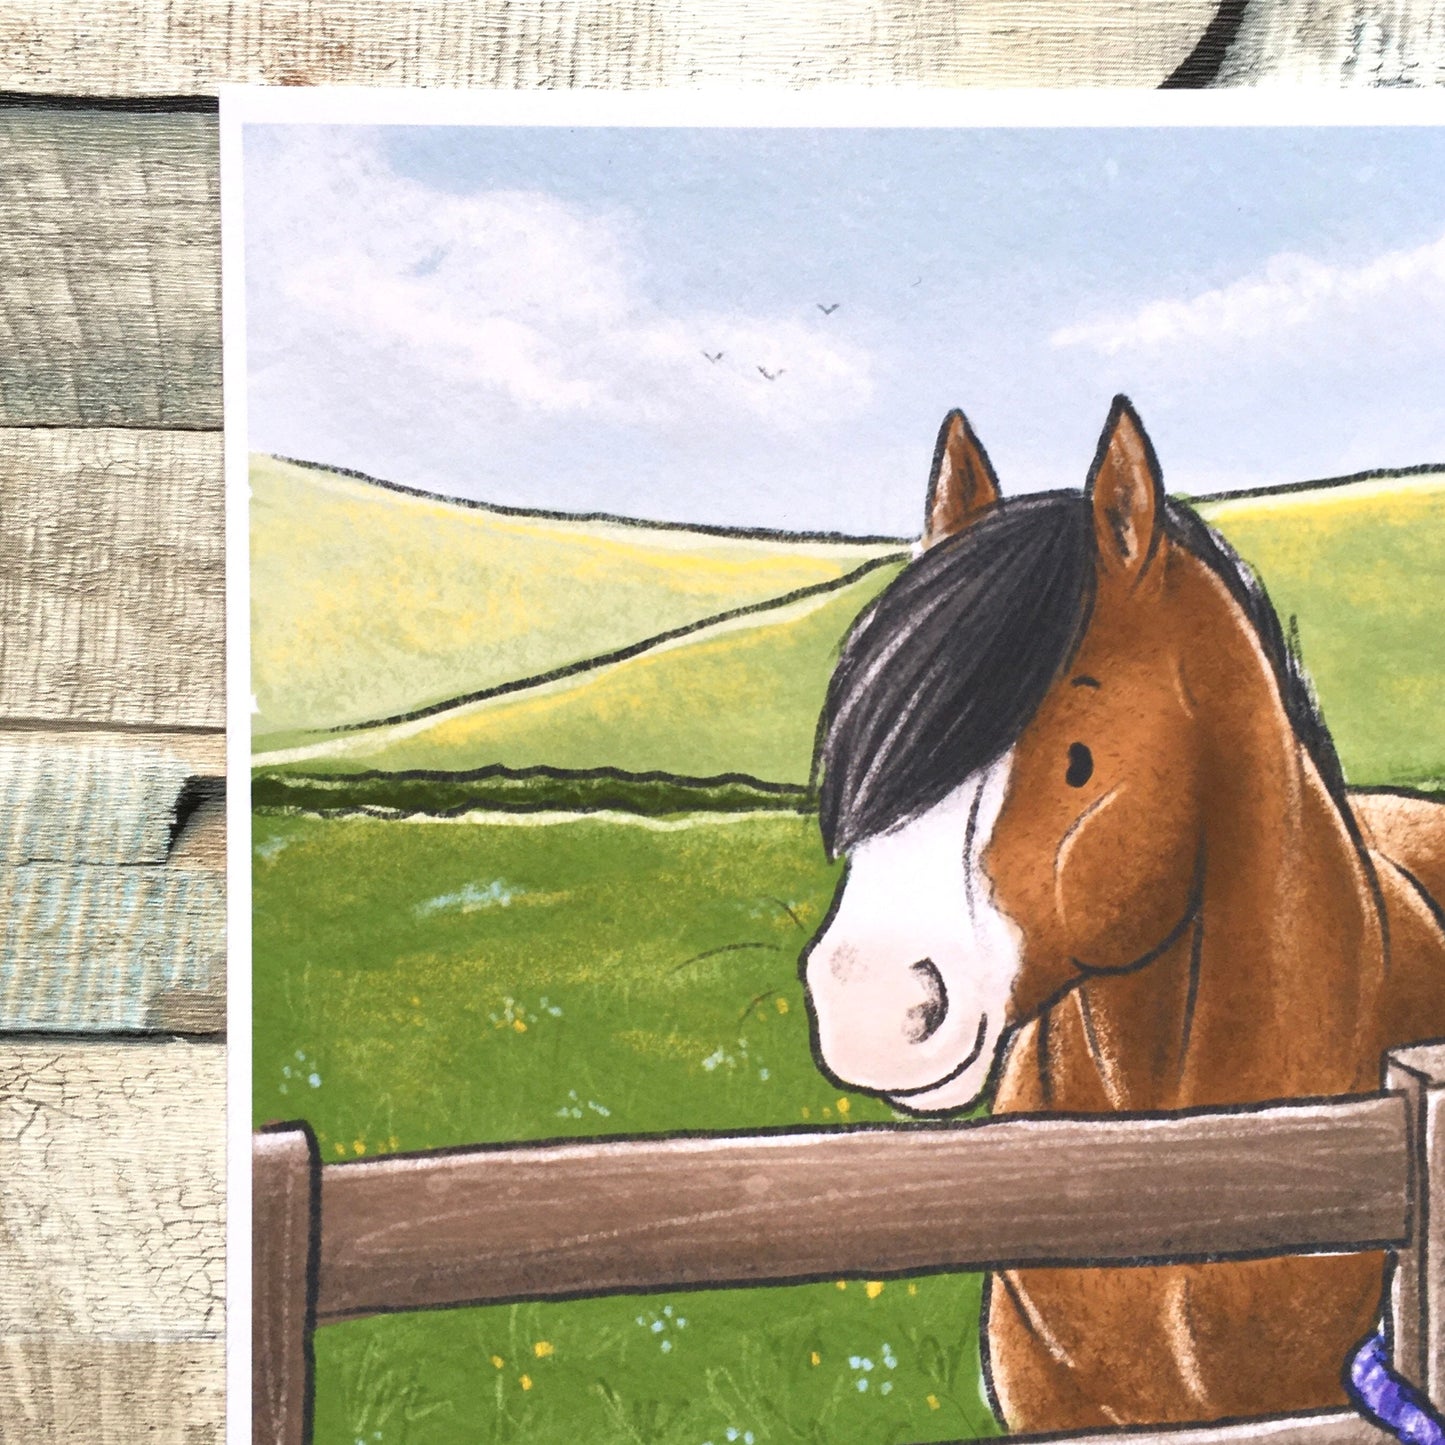 Summer Dreams Fun Horse Art Print - A5 6x4 Sizes, Cute Horse Pony Wall Art